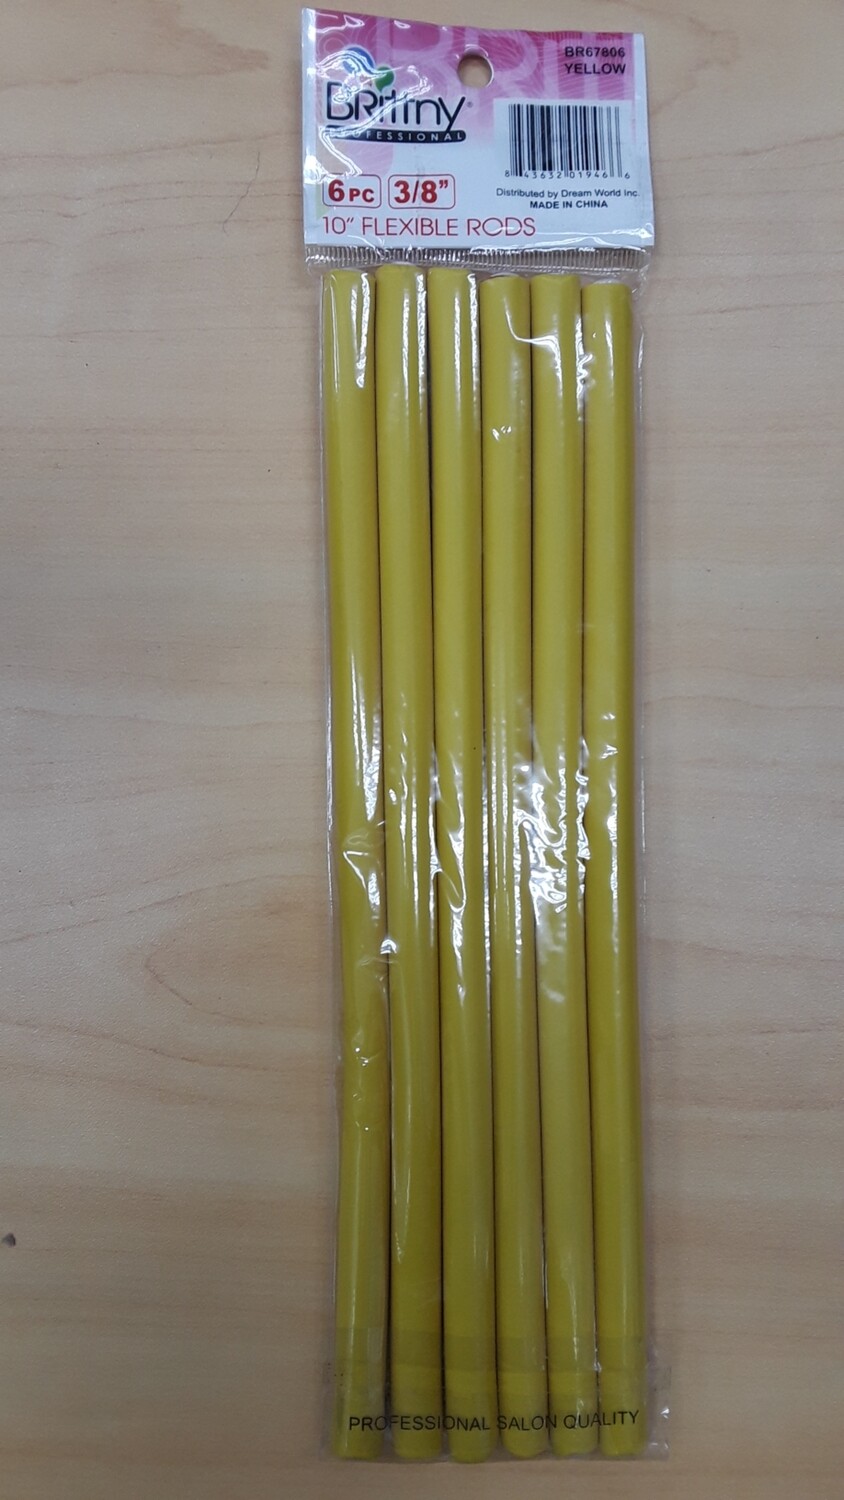 6pc 3/8", 10", Flexible Rods, Yellow